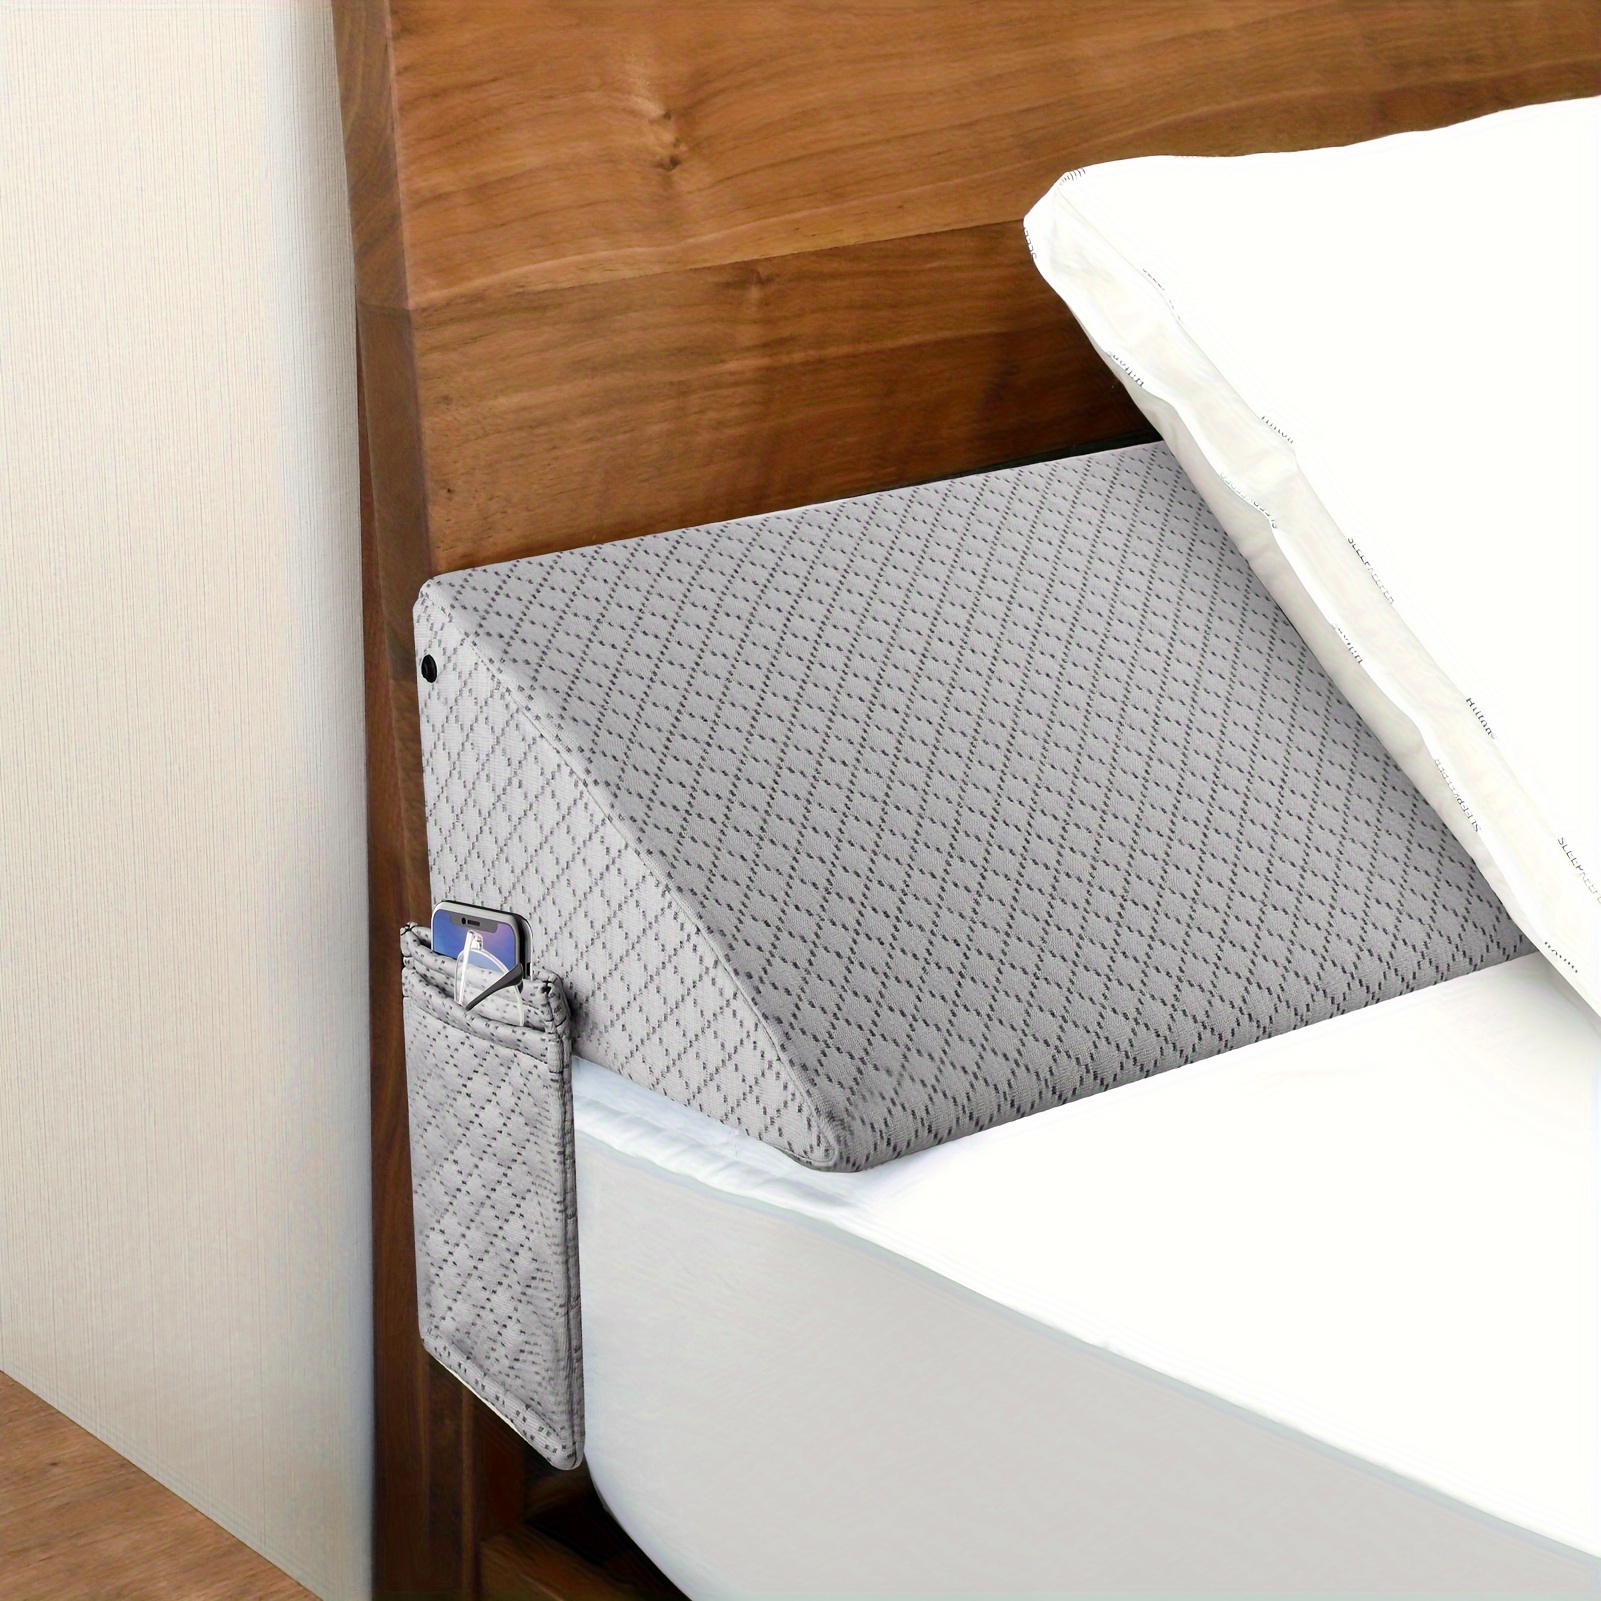 Focuprodu Bed Wedge Pillow. Soft Velvet Bed Gap Filler for Mattress Seams  (0-7),Snug Stop Mattress Wedge Pillow Fill Gap Between Headboard/Wall and